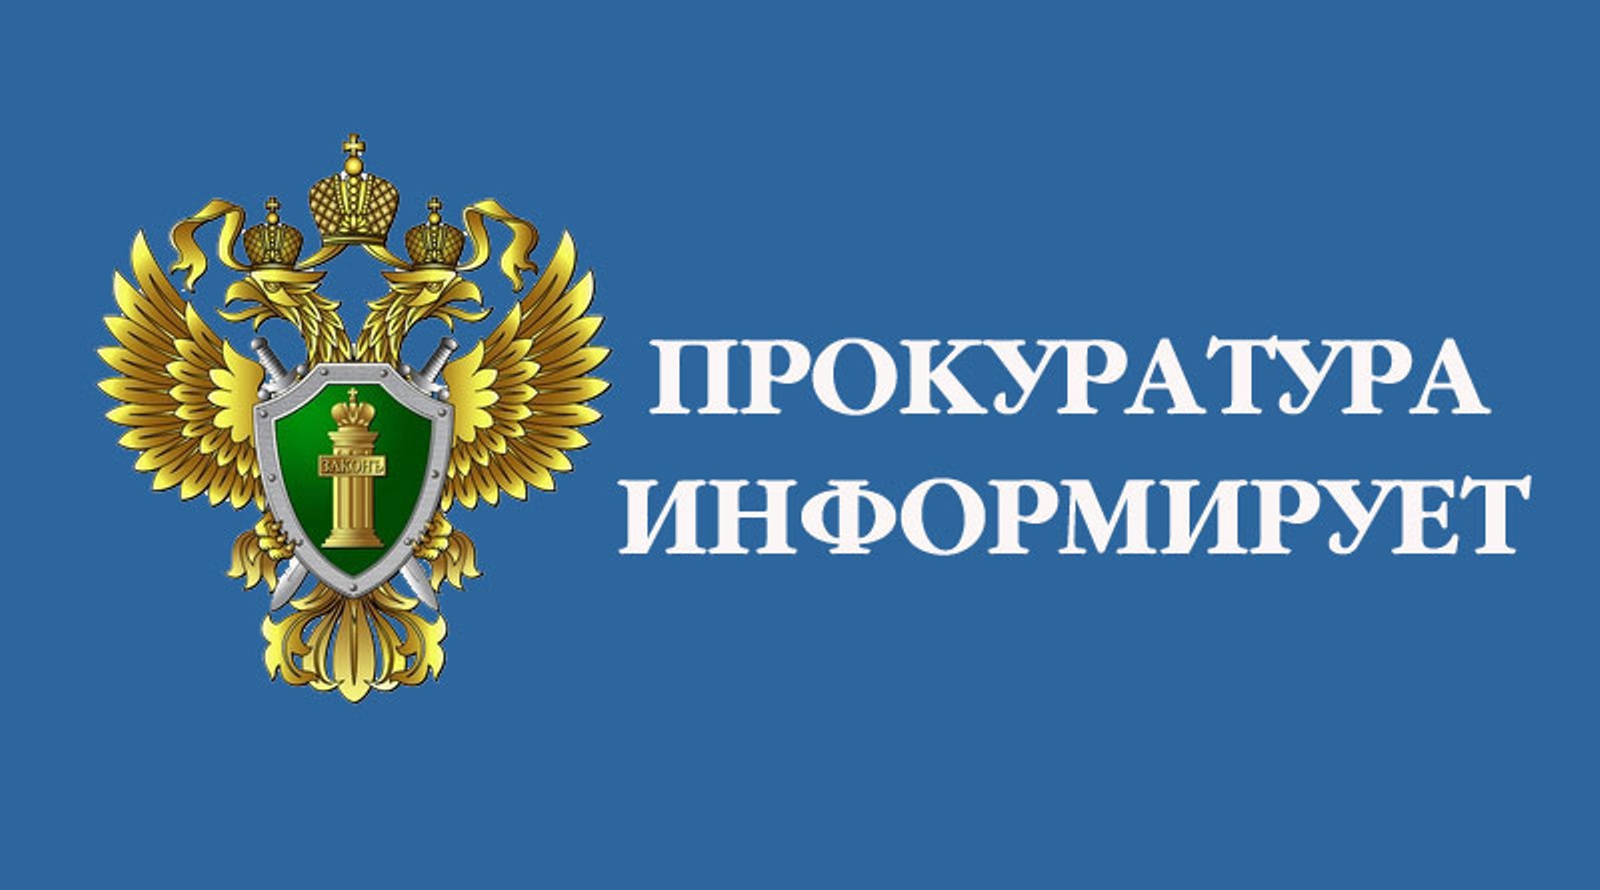 Судом удовлетворен иск прокурора Большеигнатовского района о взыскании средств, затраченных на лечение потерпевшего от преступления.